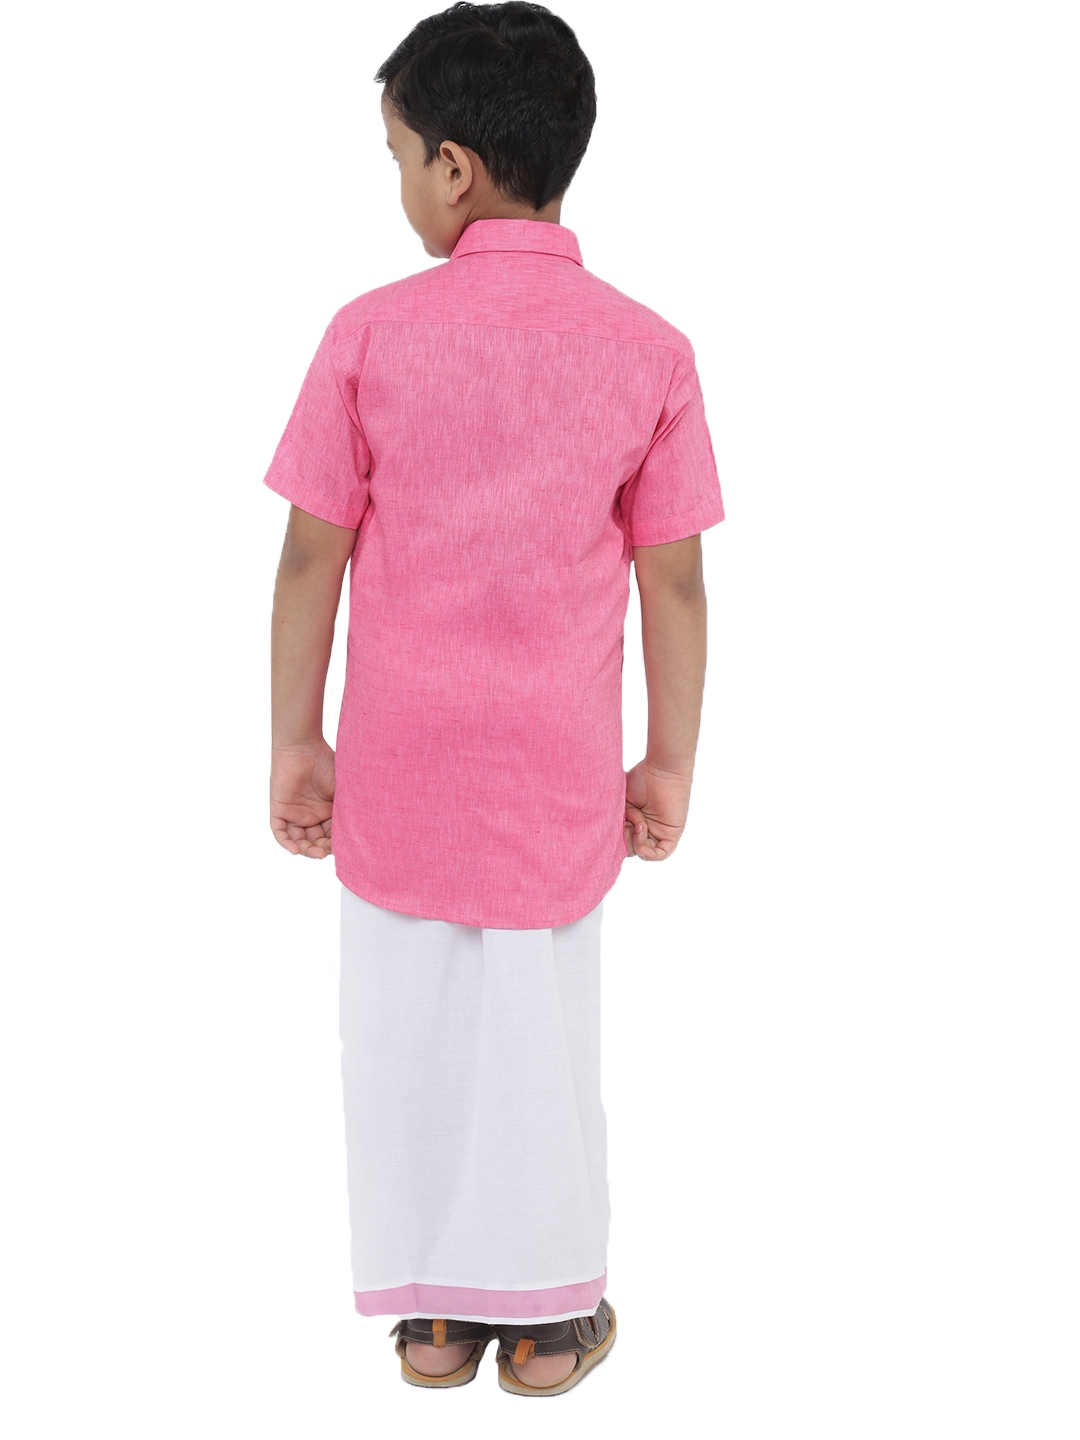 Ramraj Boys Pink Solid Shirt with White Dhoti